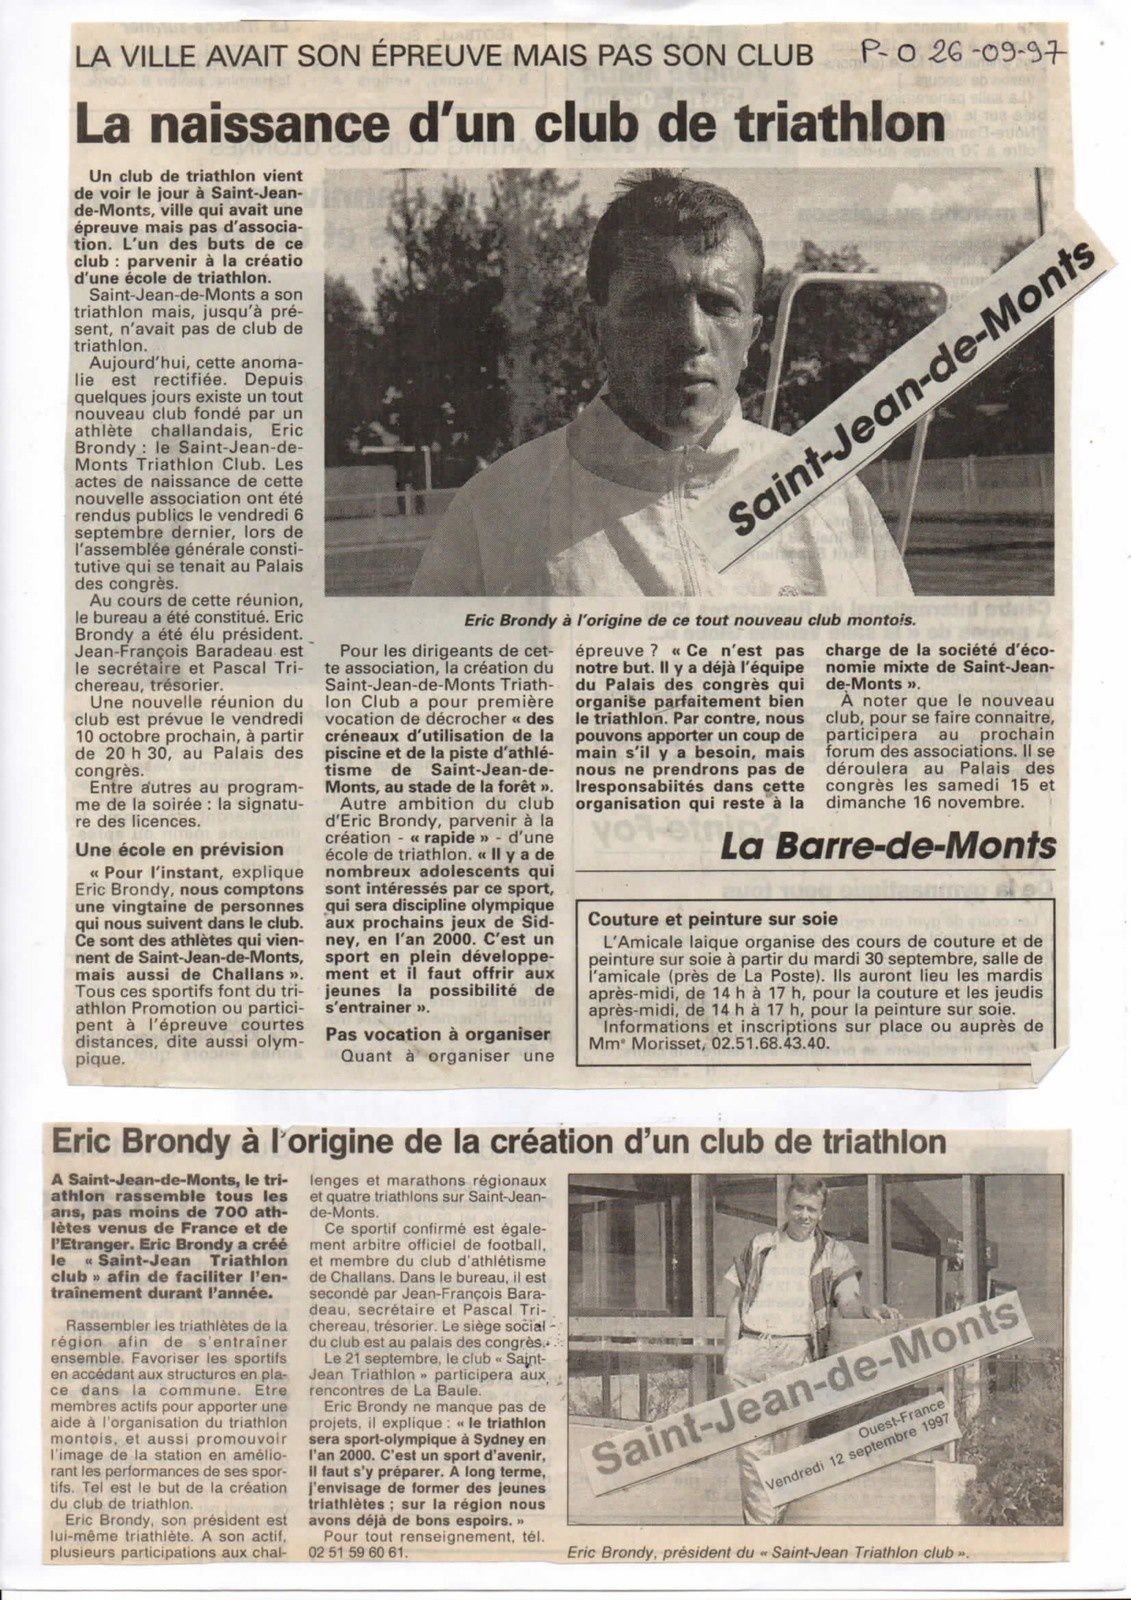 20 ans du Saint Jean de Monts Triathlon Club Vendée Athlétisme, - Sports  Vendée "Actus"